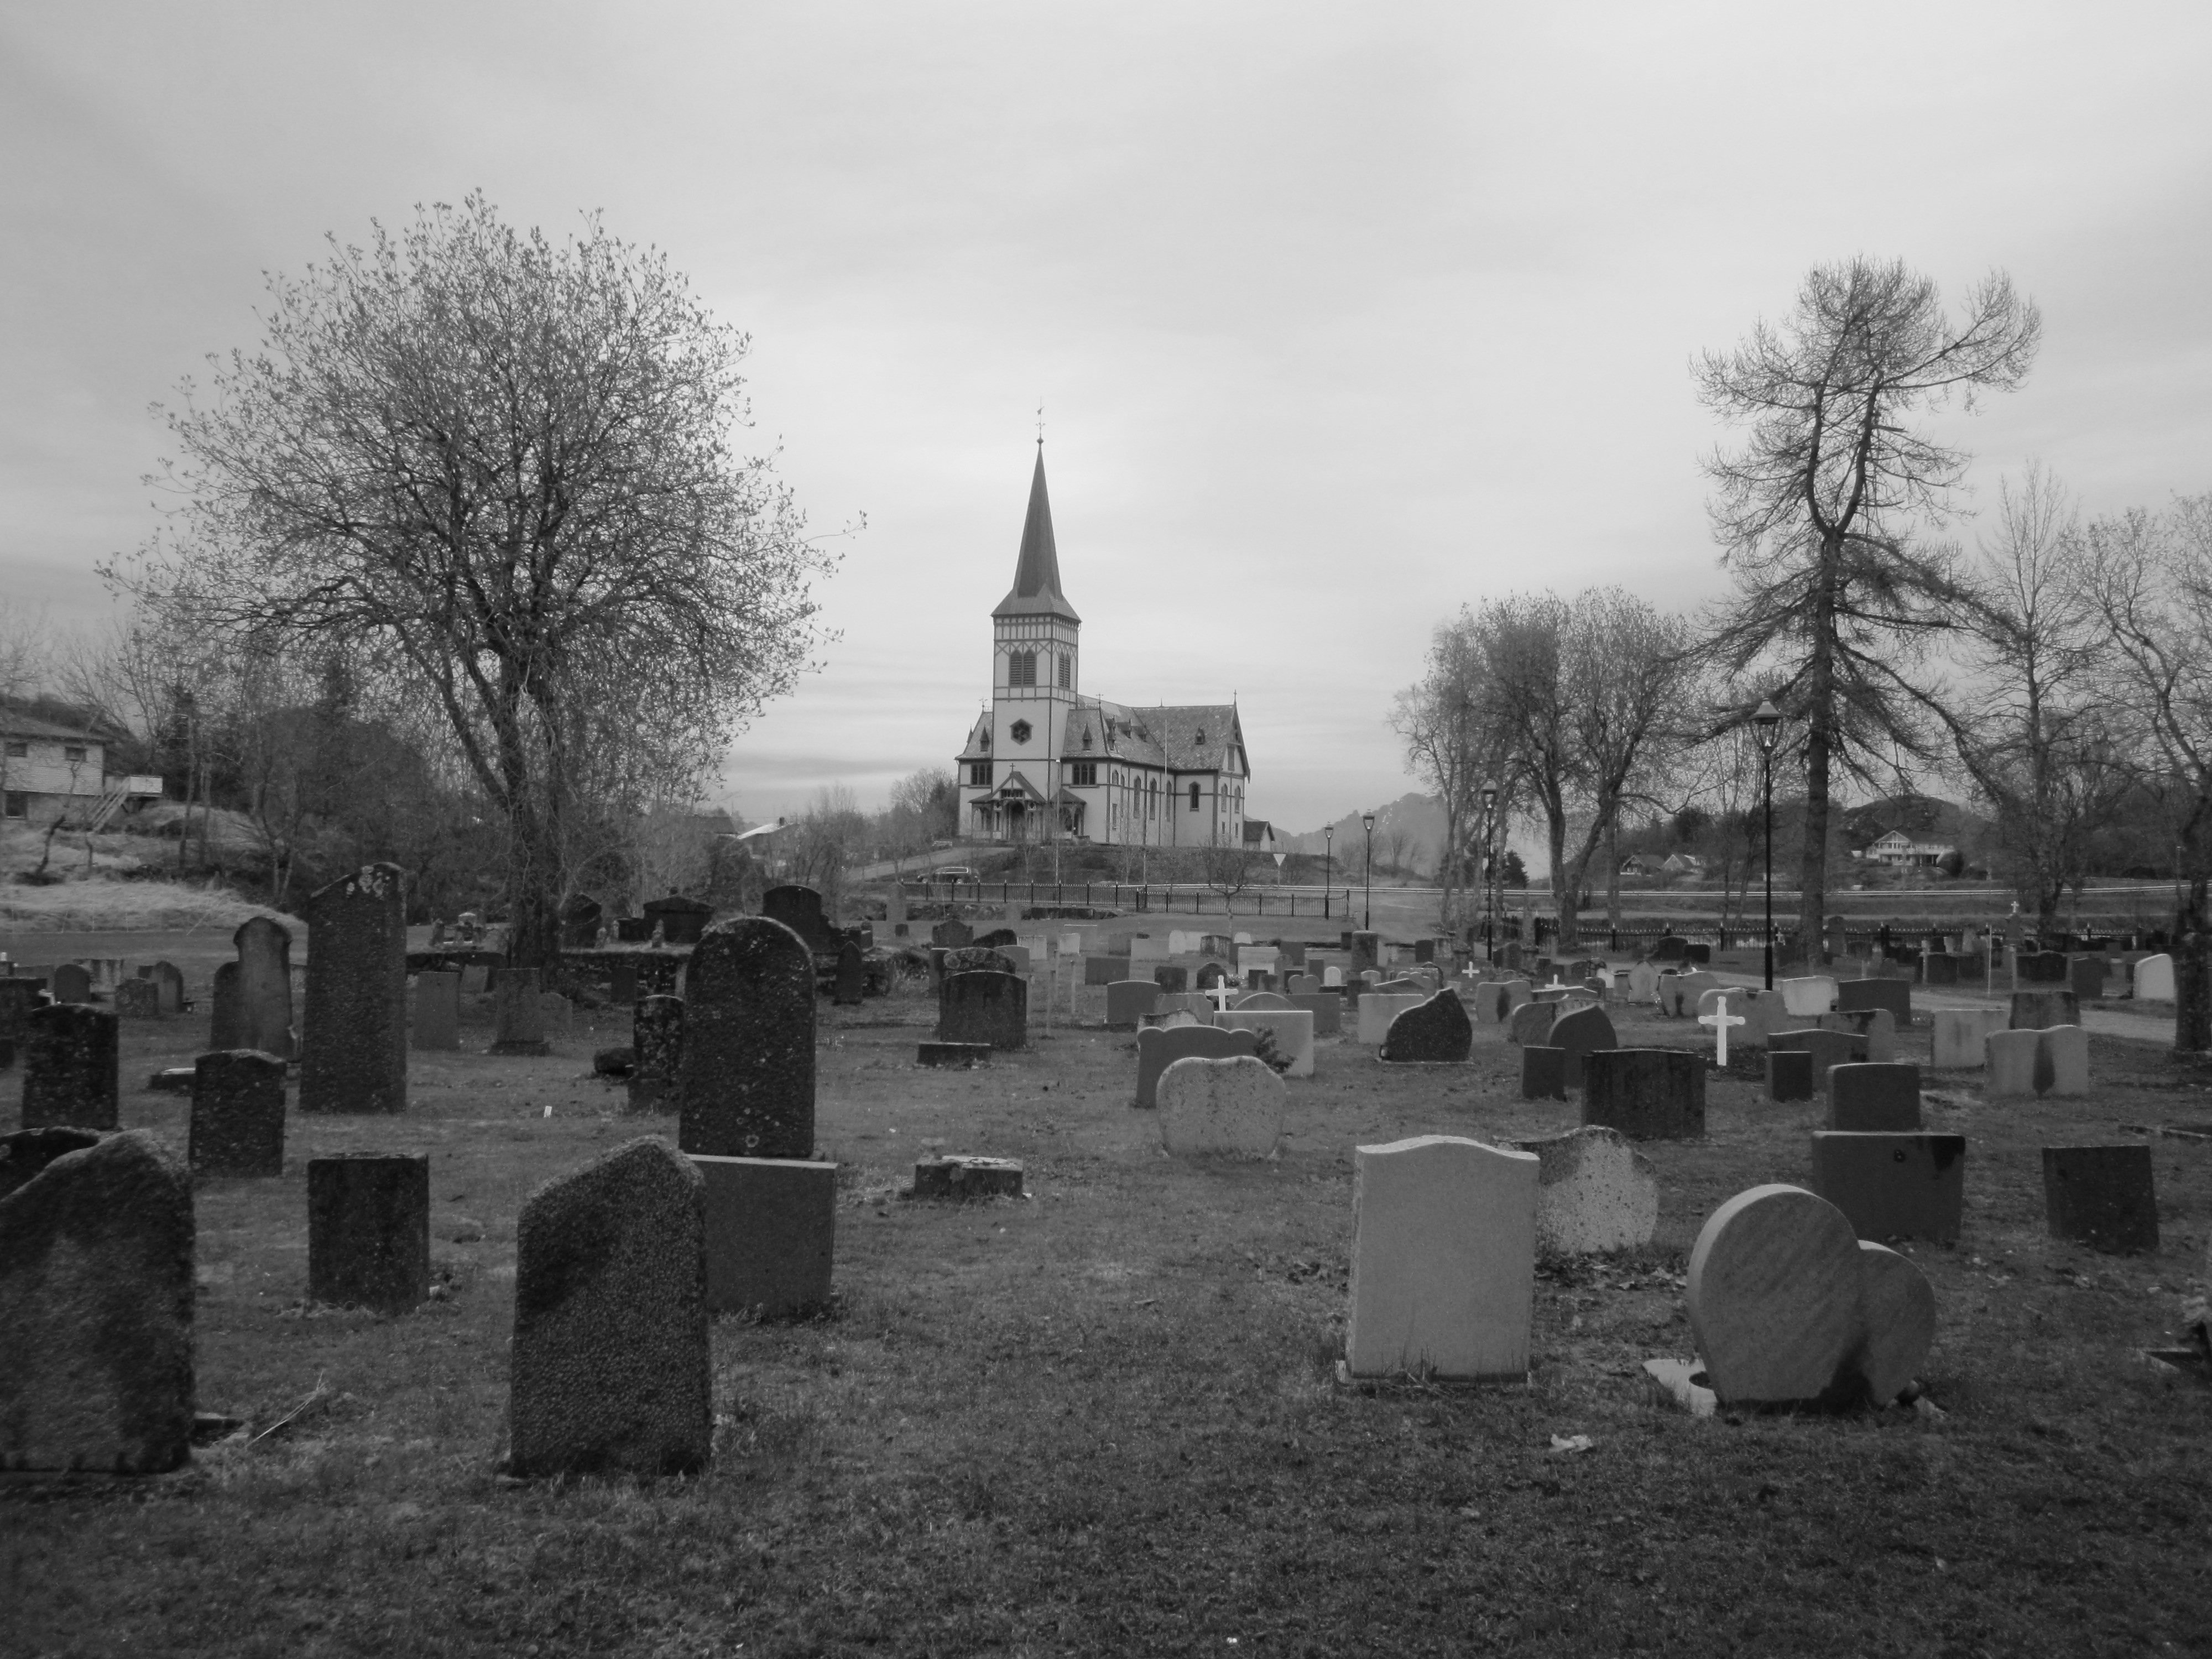 Descarga gratuita de fondo de pantalla para móvil de Oscuro, Cementerio.